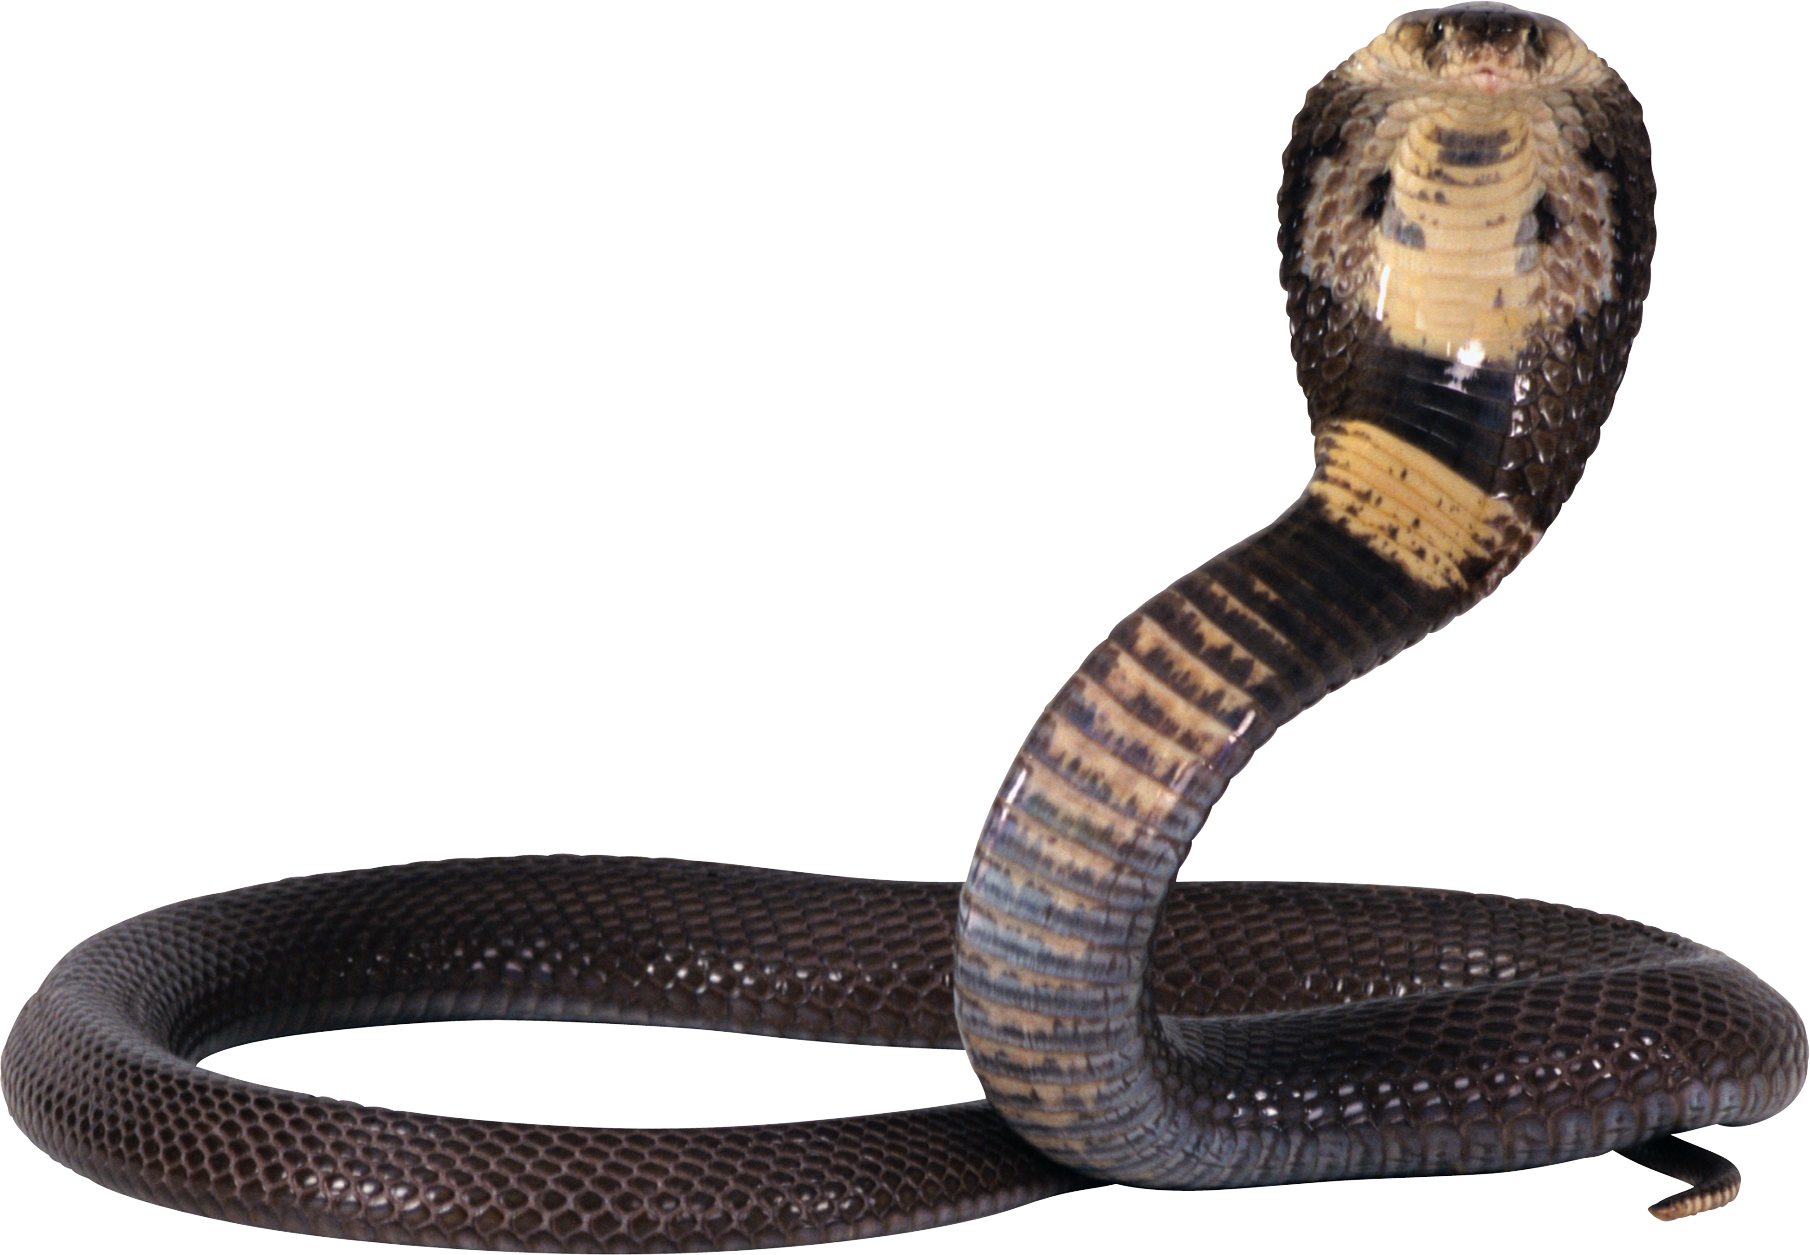 Cobra snake PNG image,download picture - Snake PNG, Cobra Snake PNG HD - Free PNG